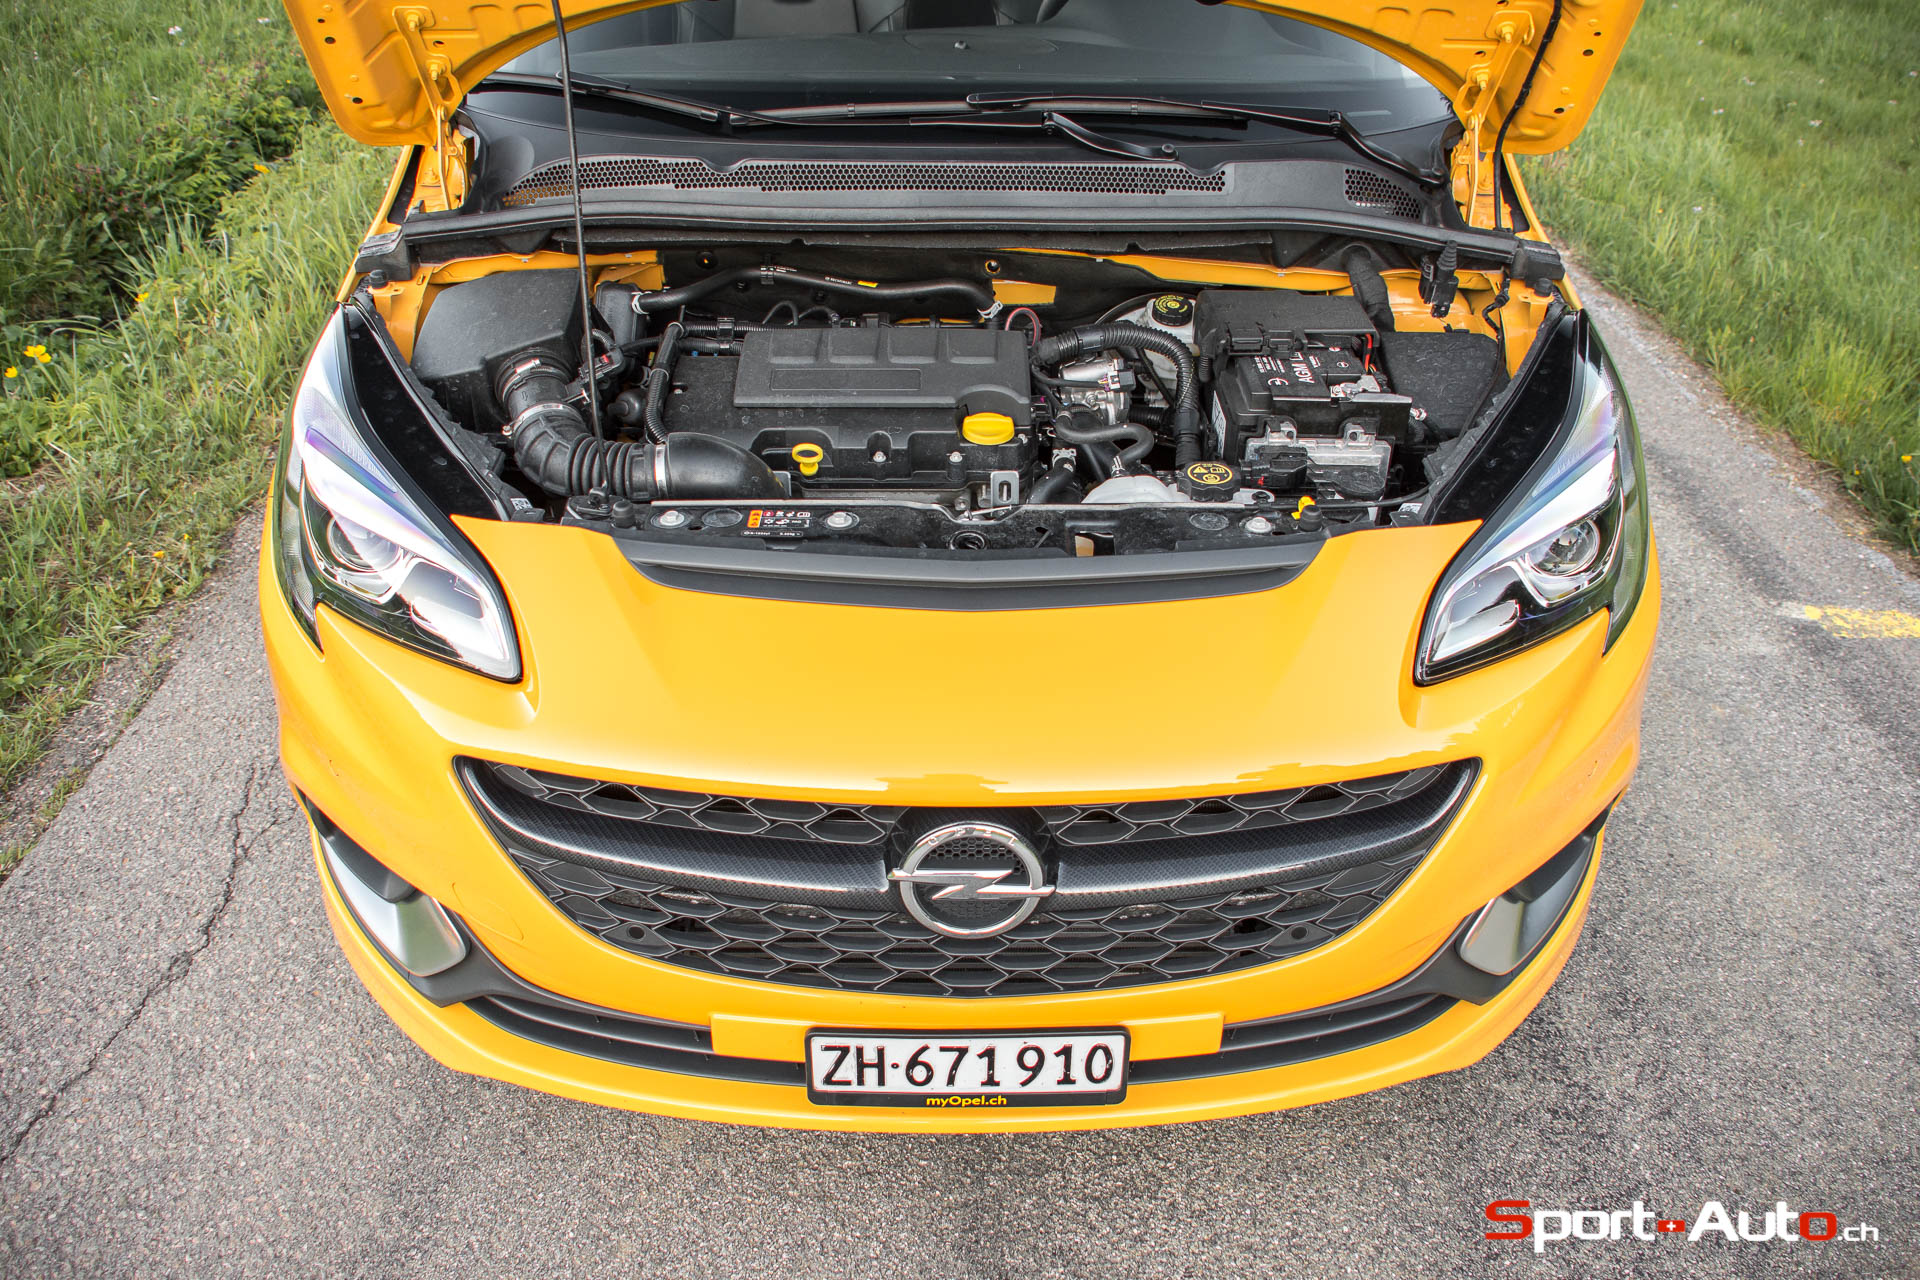 Nouvelle Opel Corsa GSi : un moteur pour le plaisir, Opel